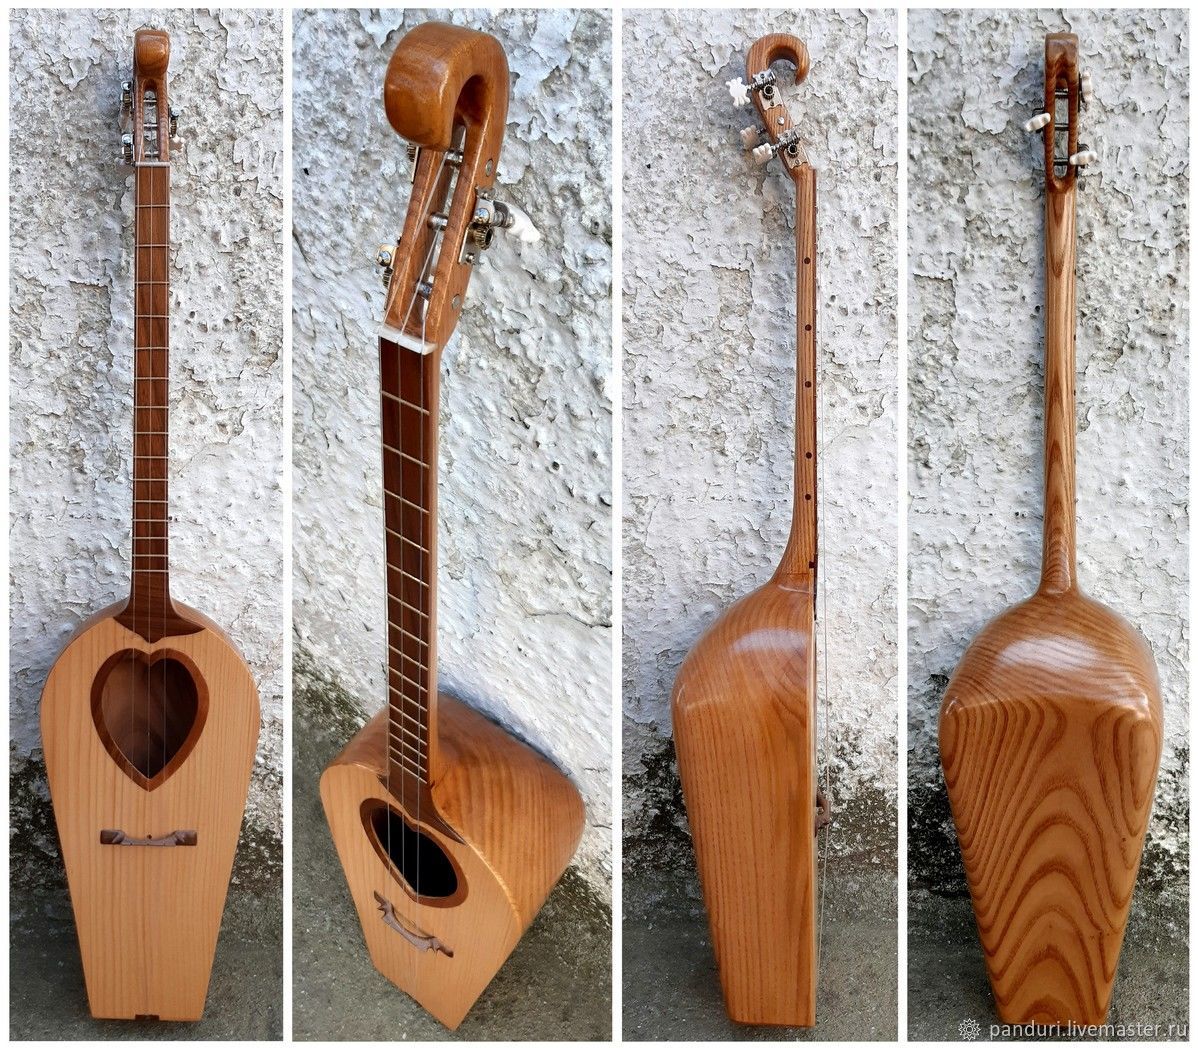 Производство европейских бронзовых духовых музыкальных инструментов в деревне Фамфао